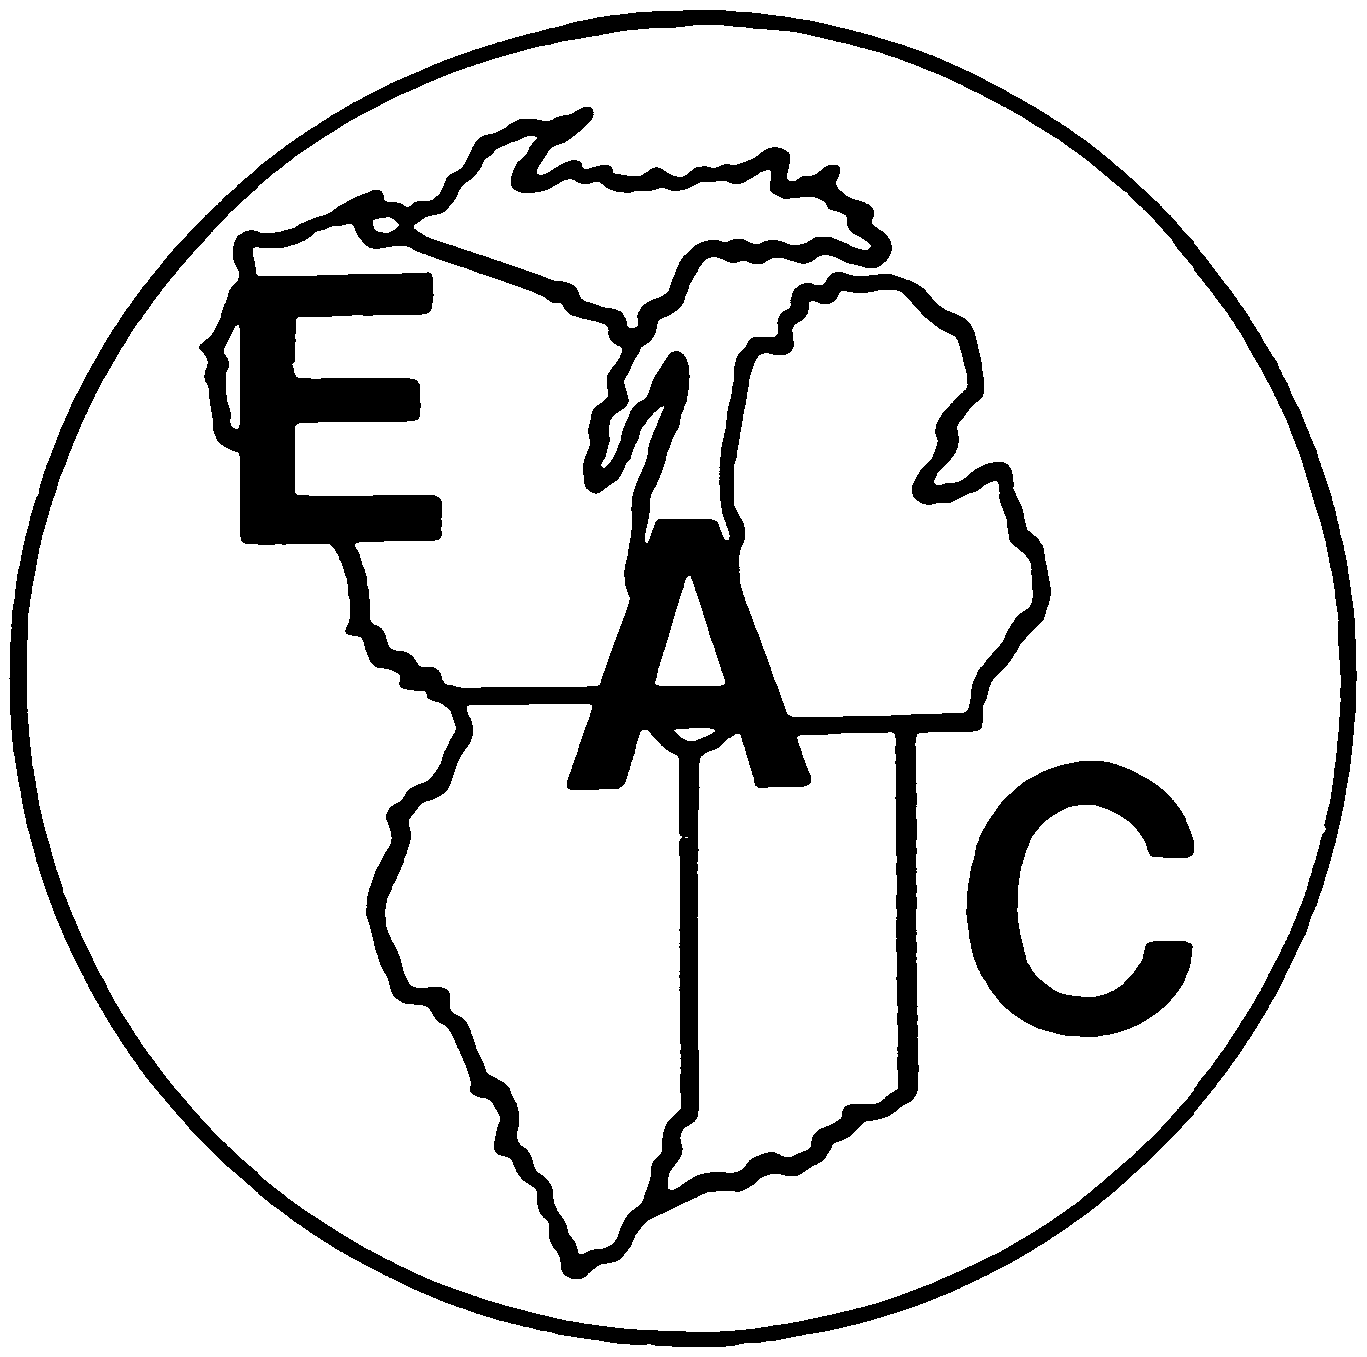 Trademark Logo EAC